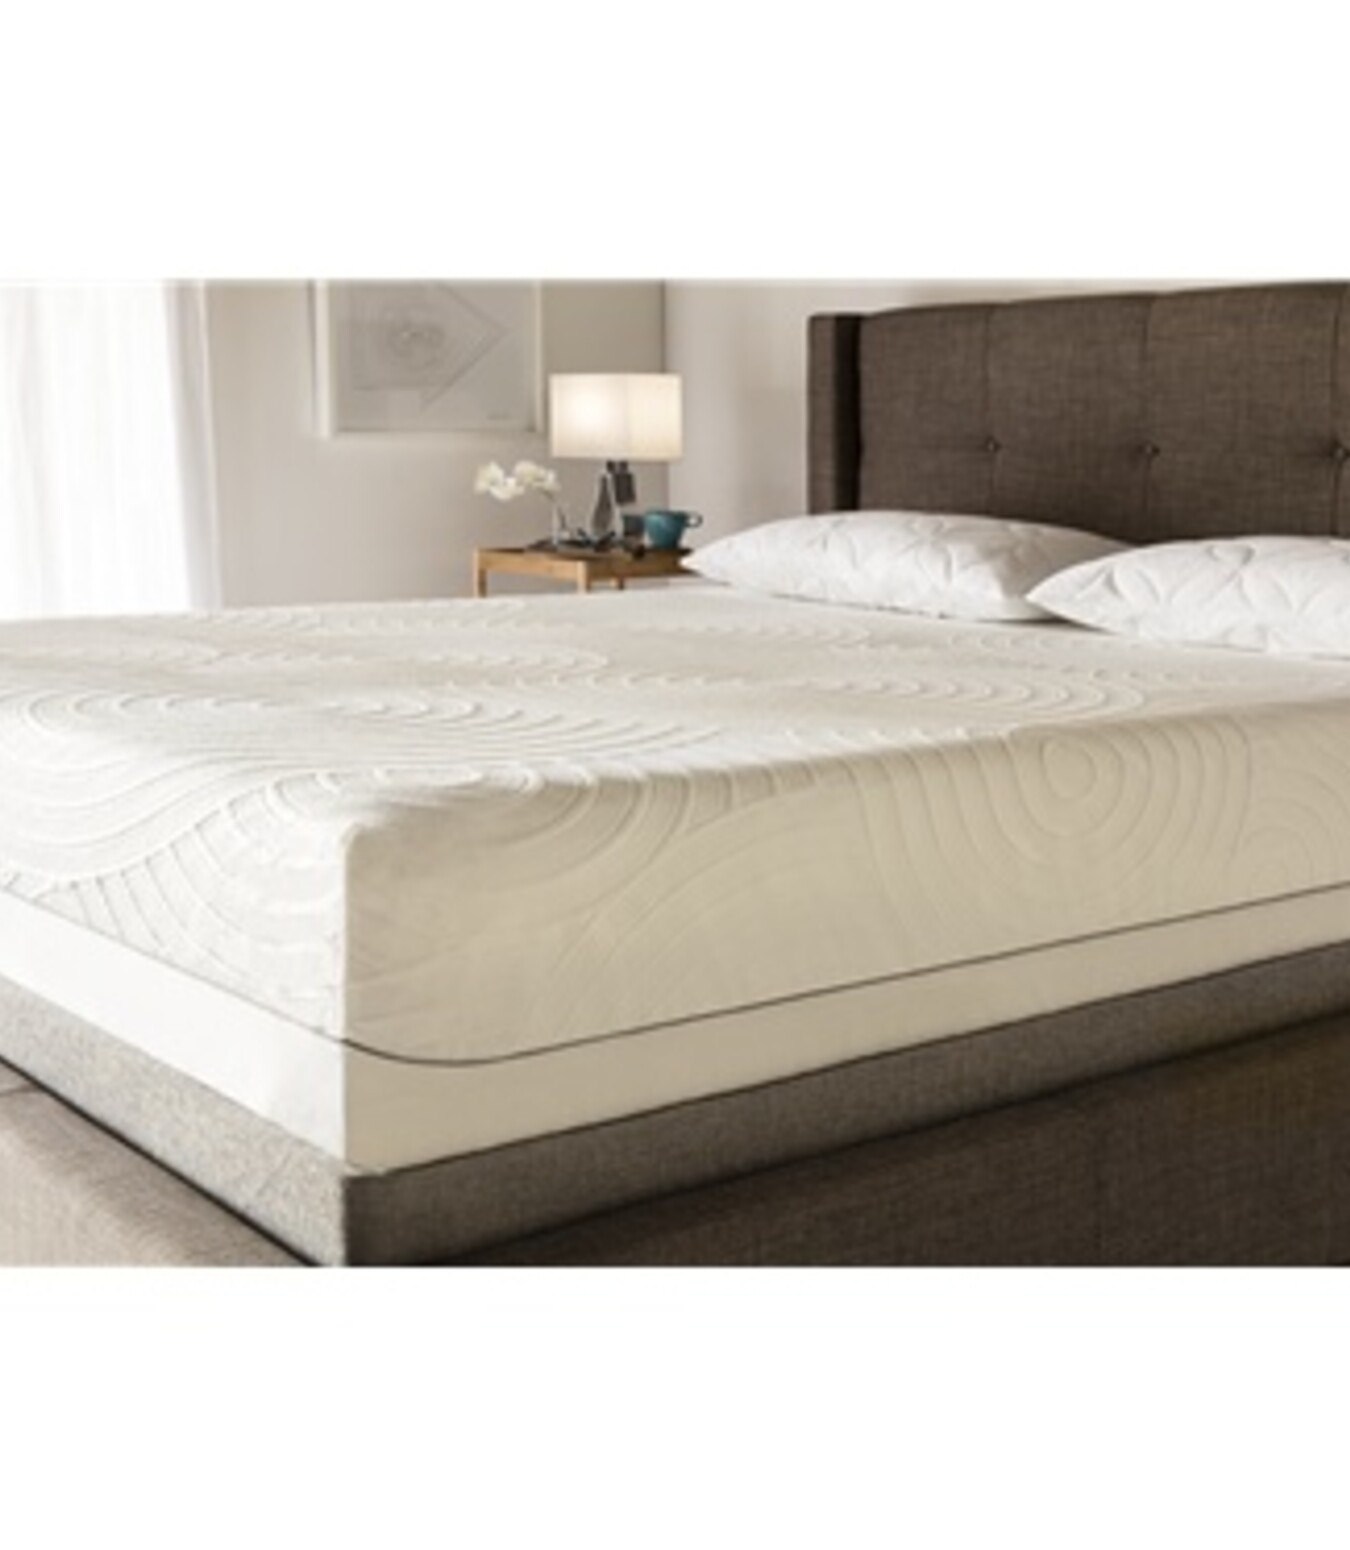 https://cdn.shoplightspeed.com/shops/609664/files/2489794/1350x1550x1/tempur-new-mattress-protector-fits-8-to-14-deep-ma.jpg